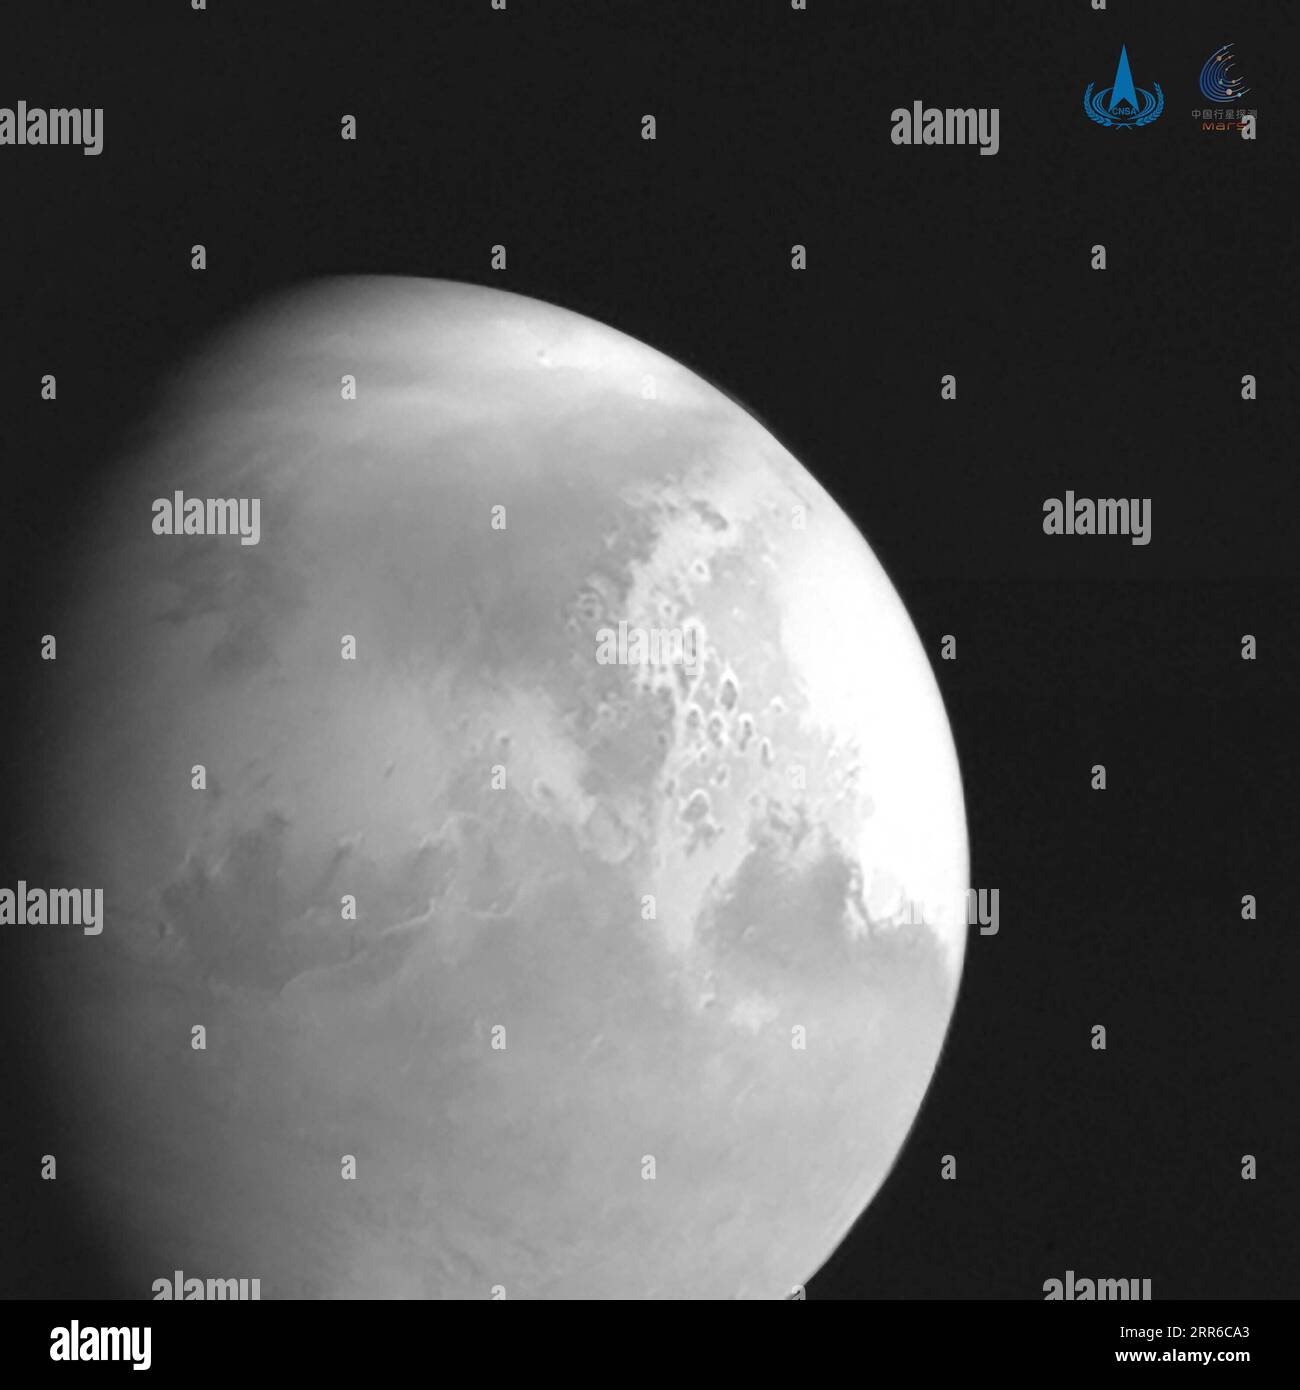 210205 -- PEKING, 5. Februar 2021 -- Foto veröffentlicht von der China National Space Administration CNSA zeigt das erste Bild des Mars, das von der Mars-Sonde Tianwen-1 aus einer Entfernung von 2,2 Millionen km aufgenommen wurde Die chinesische Marssonde Tianwen-1 führte am Freitagabend ihre vierte Orbitalkorrektur durch, so die CNSA. Die Sonde führte die Orbitalkorrektur um 20:00 Uhr Pekinger Zeit durch, um sicherzustellen, dass die Sonde ein gesundes, geplantes Treffen mit dem Mars erzielt. Die CNSA sagte auch, dass die Sonde das erste Bild des Mars aus einer Entfernung von 2,2 Millionen km aufgenommen hatte Die Sonde ist etwa 197 Tage in der Umlaufbahn gereist, Stockfoto